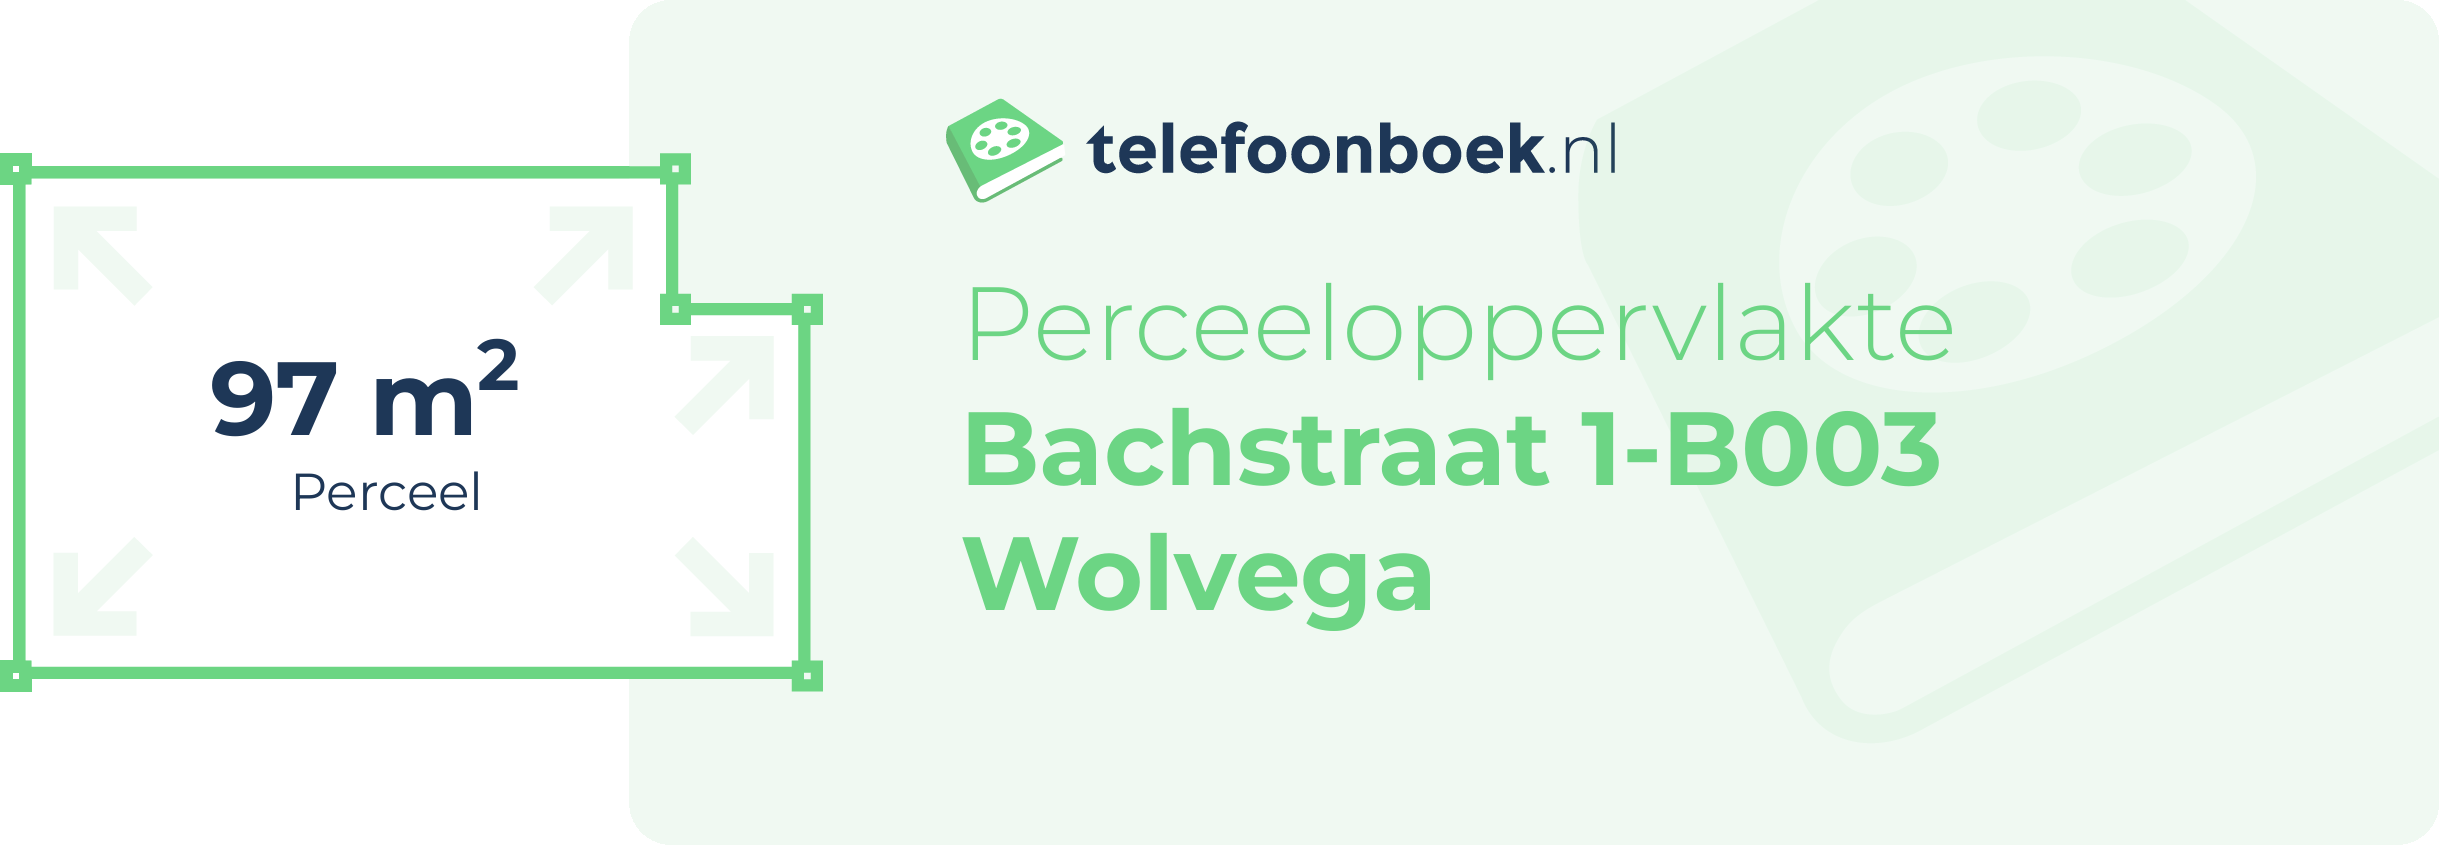 Perceeloppervlakte Bachstraat 1-B003 Wolvega